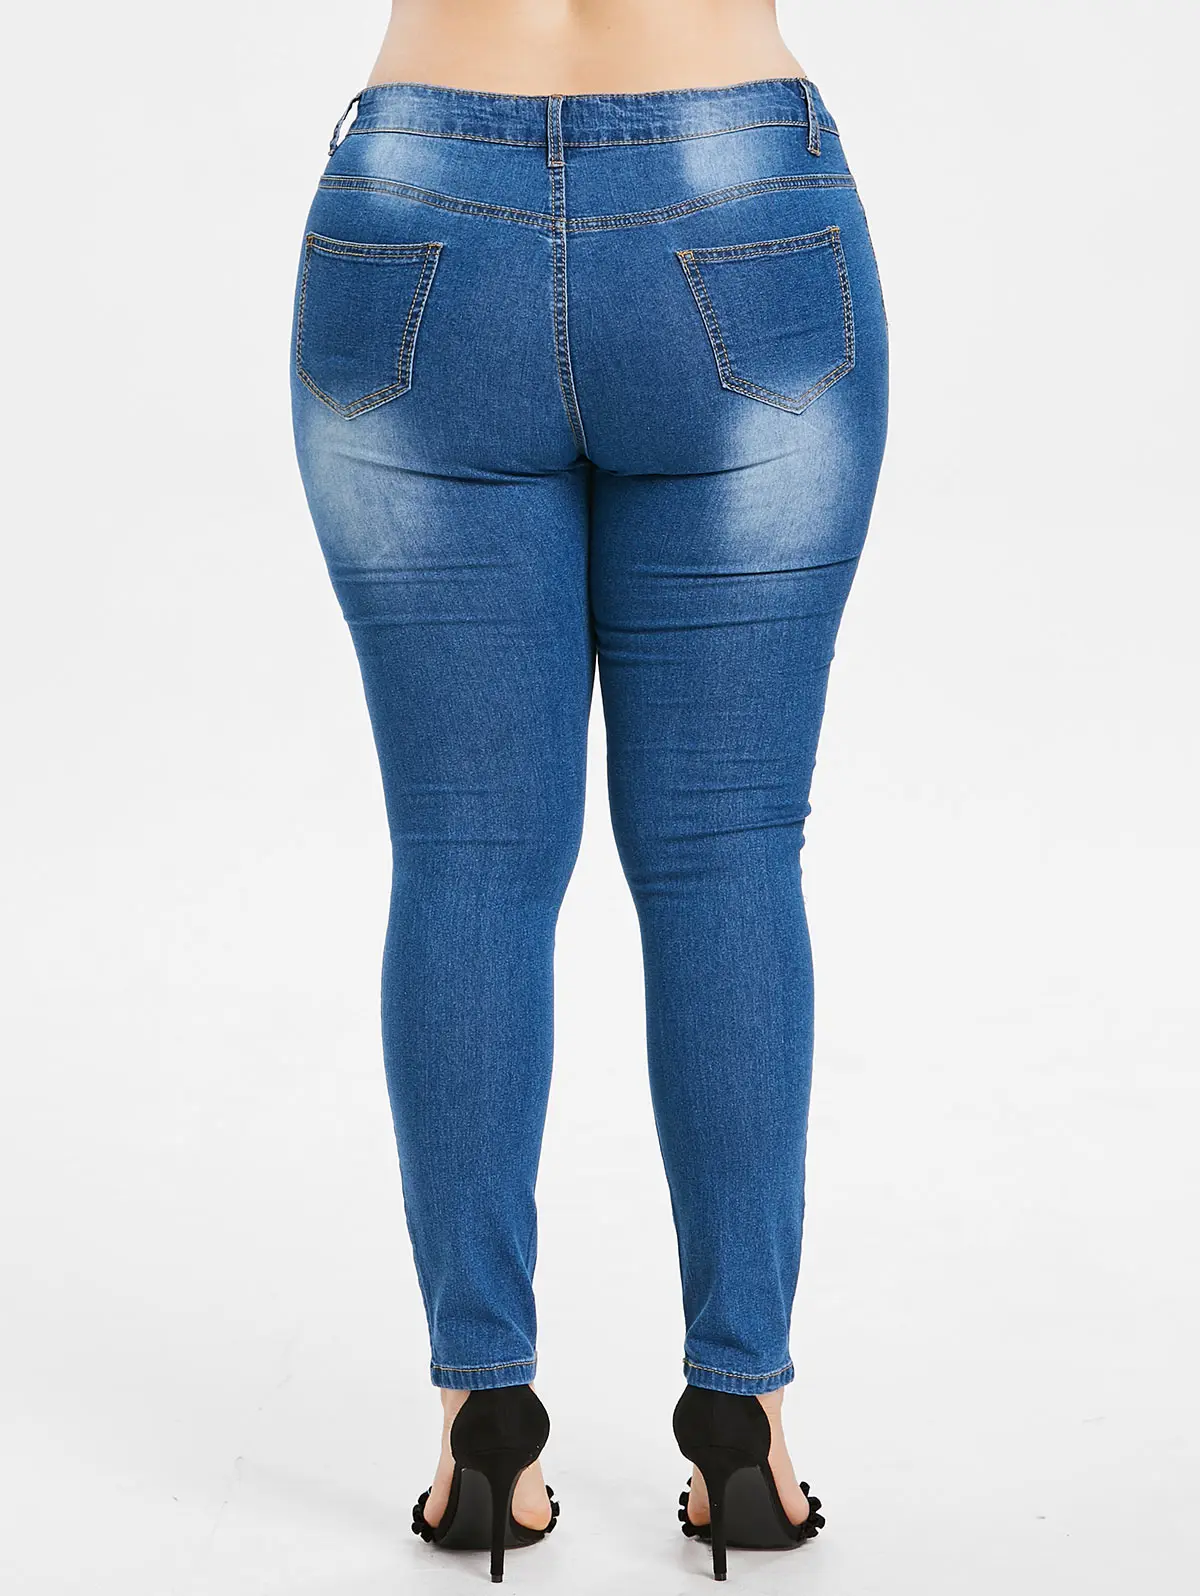 Wisalo/большие размеры 5XL, потертые женские джинсы с вышивкой, обтягивающие джинсы с высокой талией, джинсовые стрейч-брюки